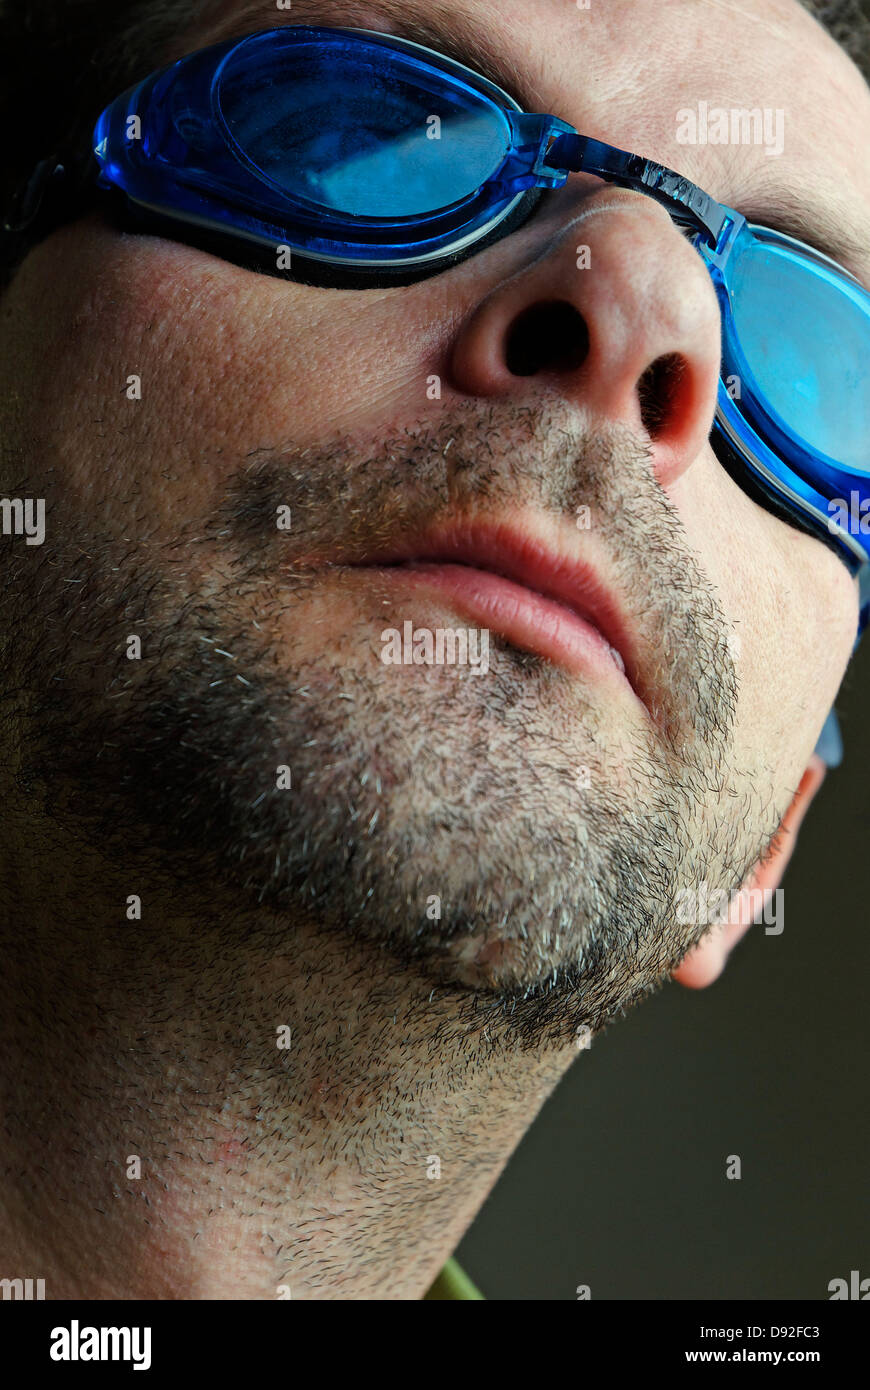 Anteojos de natación fotografías e imágenes de alta resolución - Página 2 -  Alamy